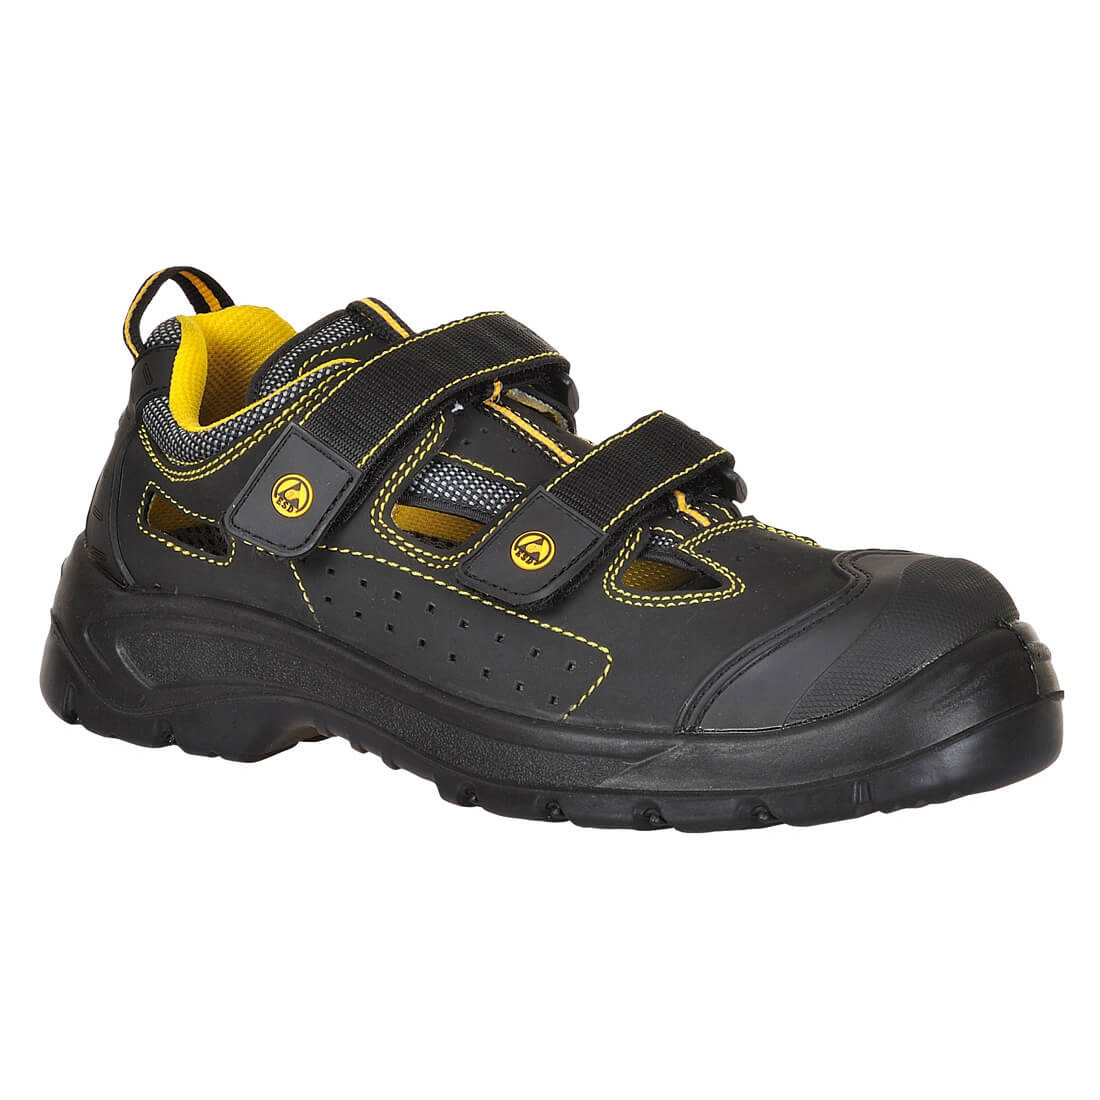 Sandale composite ESD S1P - Les chaussures de protection